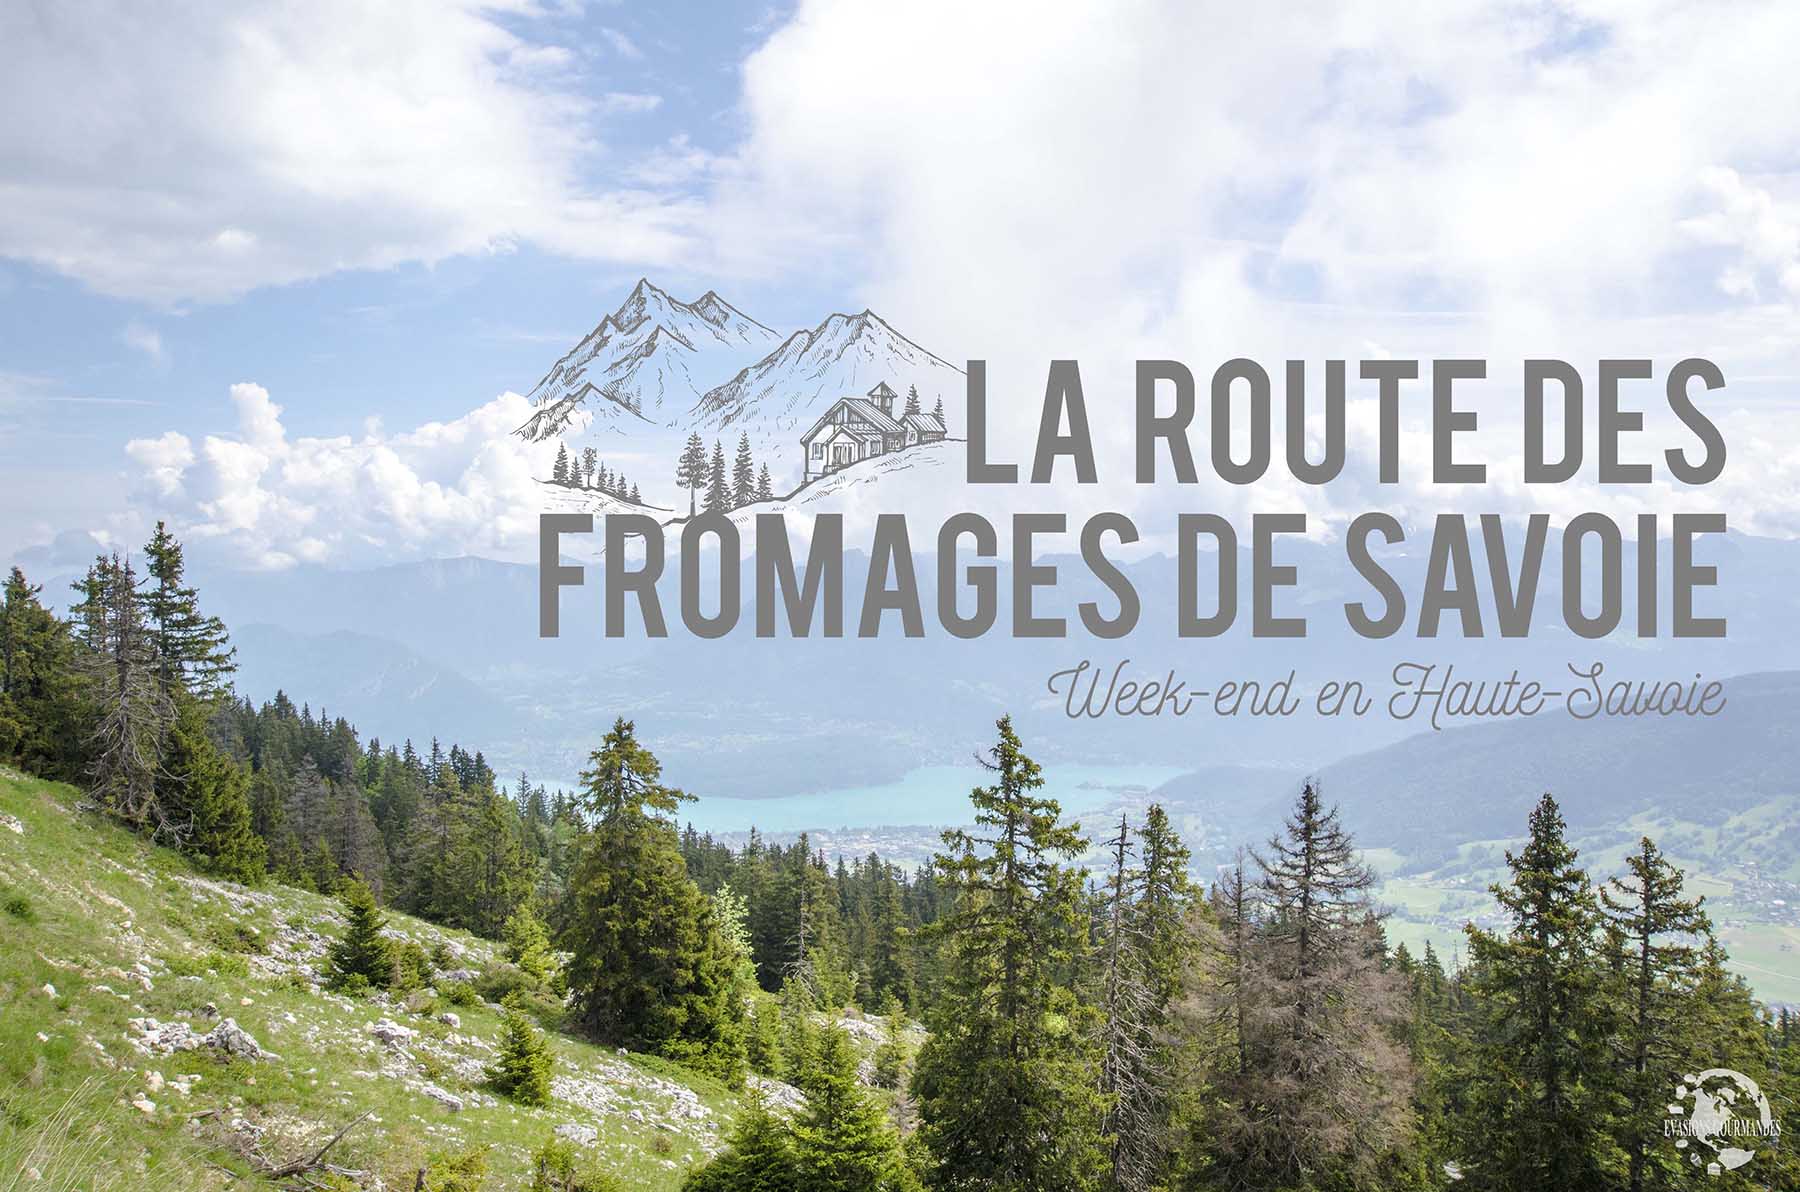 La Route des Fromages de Savoie